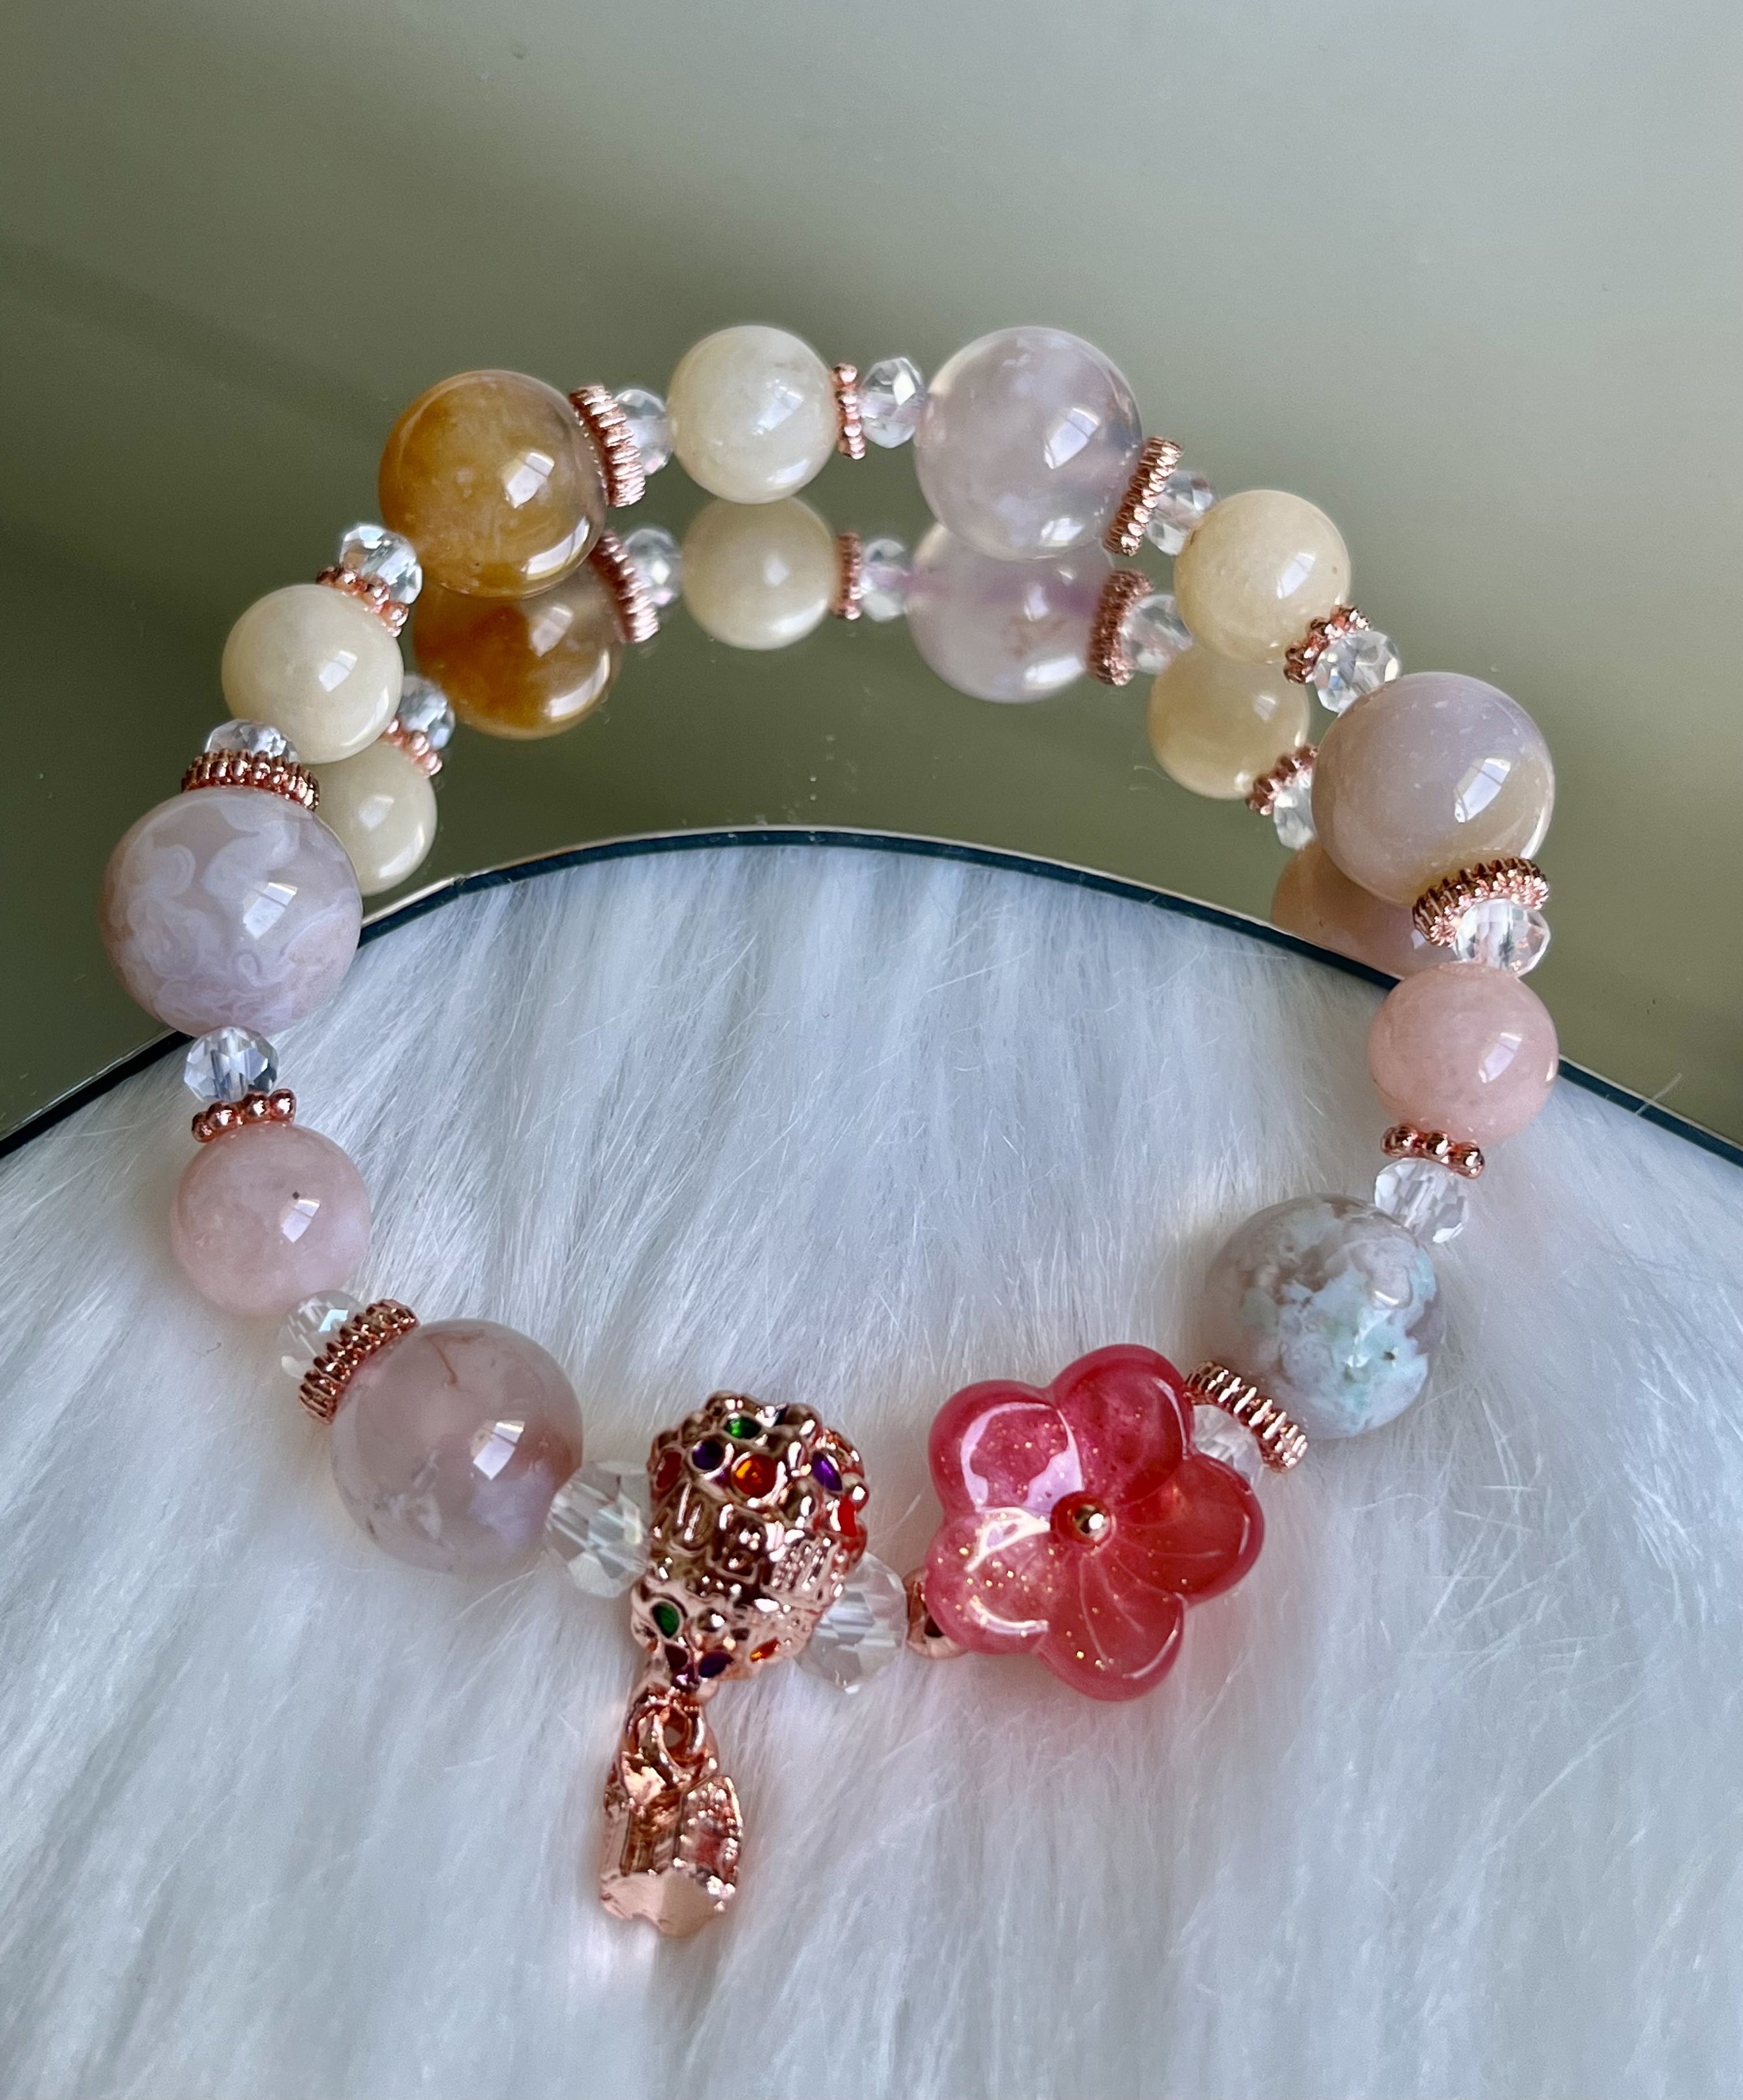 Clear Quartz Gemstone Bracelet Cherry Blossom Agate Bracelet SakuraFlower Agate 8mm Gemstone Beads Bracelet Morganite Bracelet